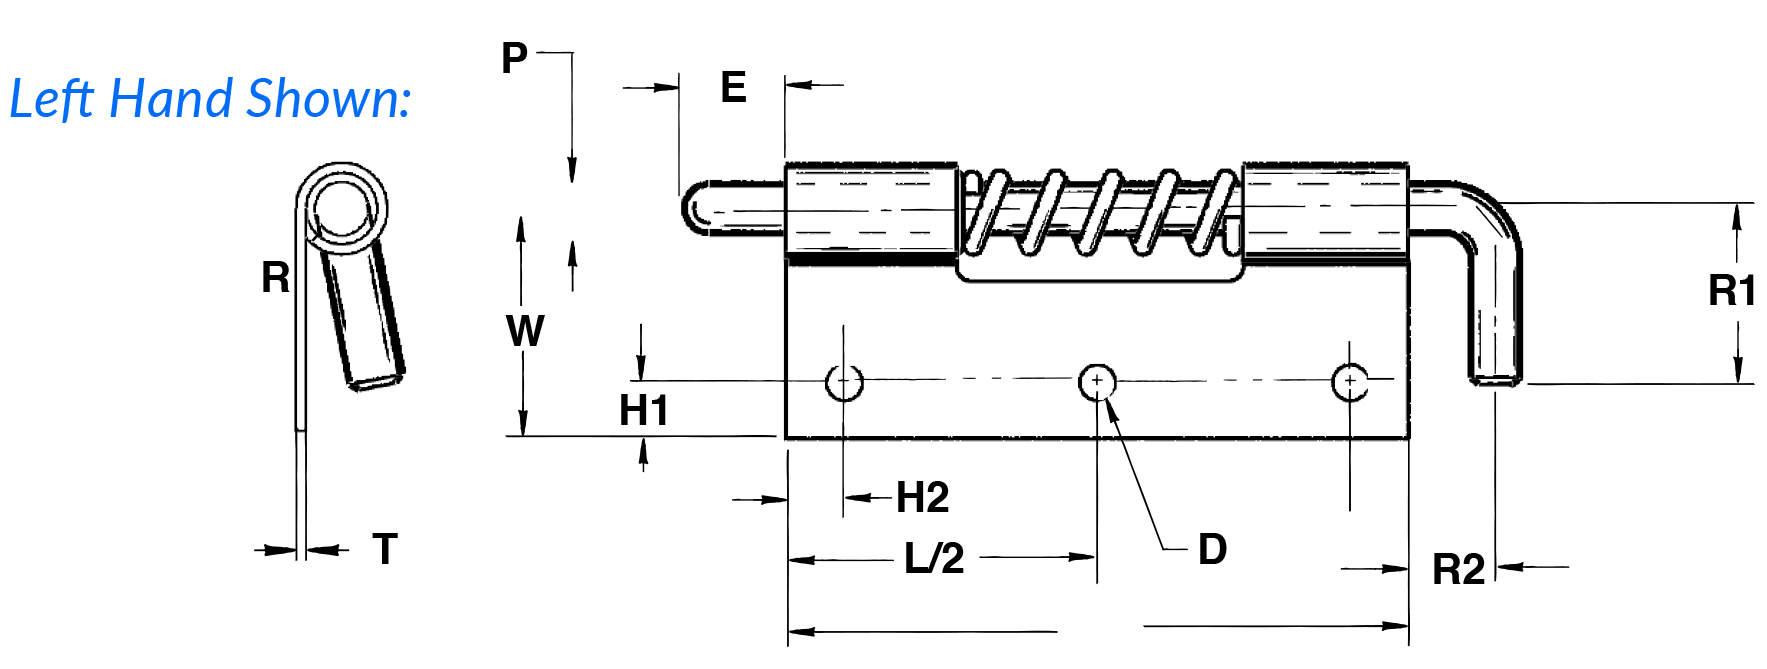 711-718-diagram